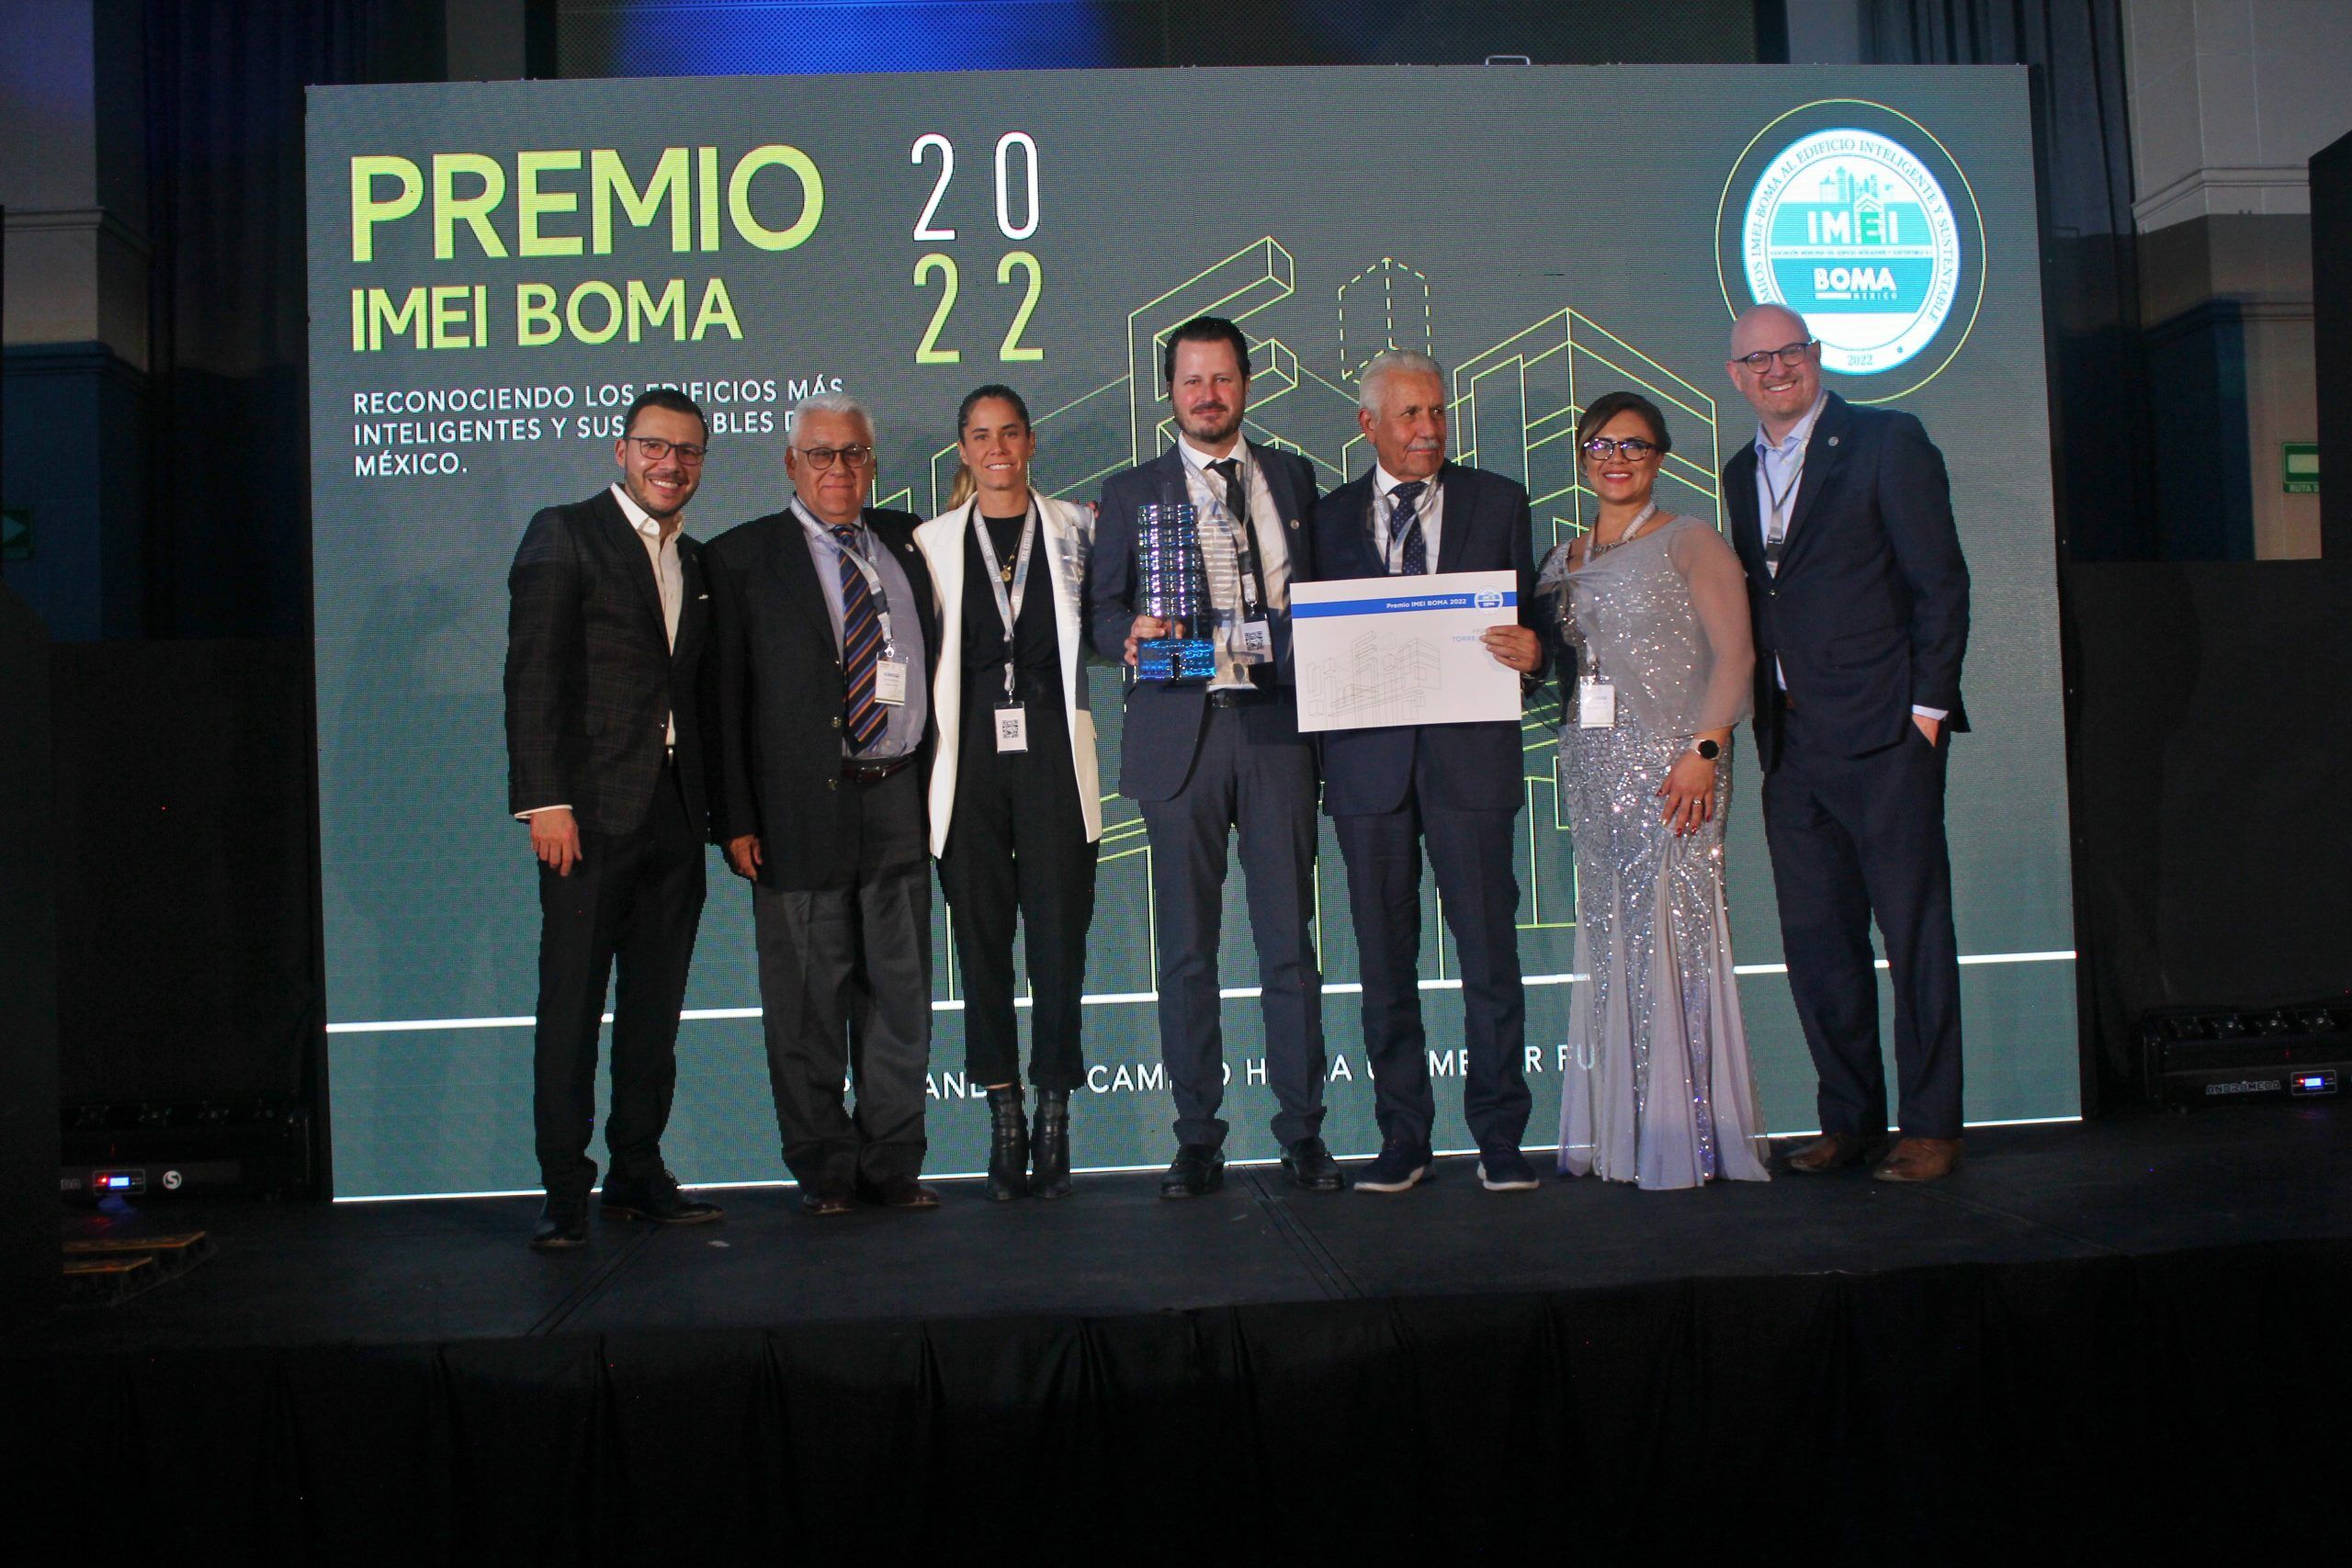 Premio IMEI BOMA